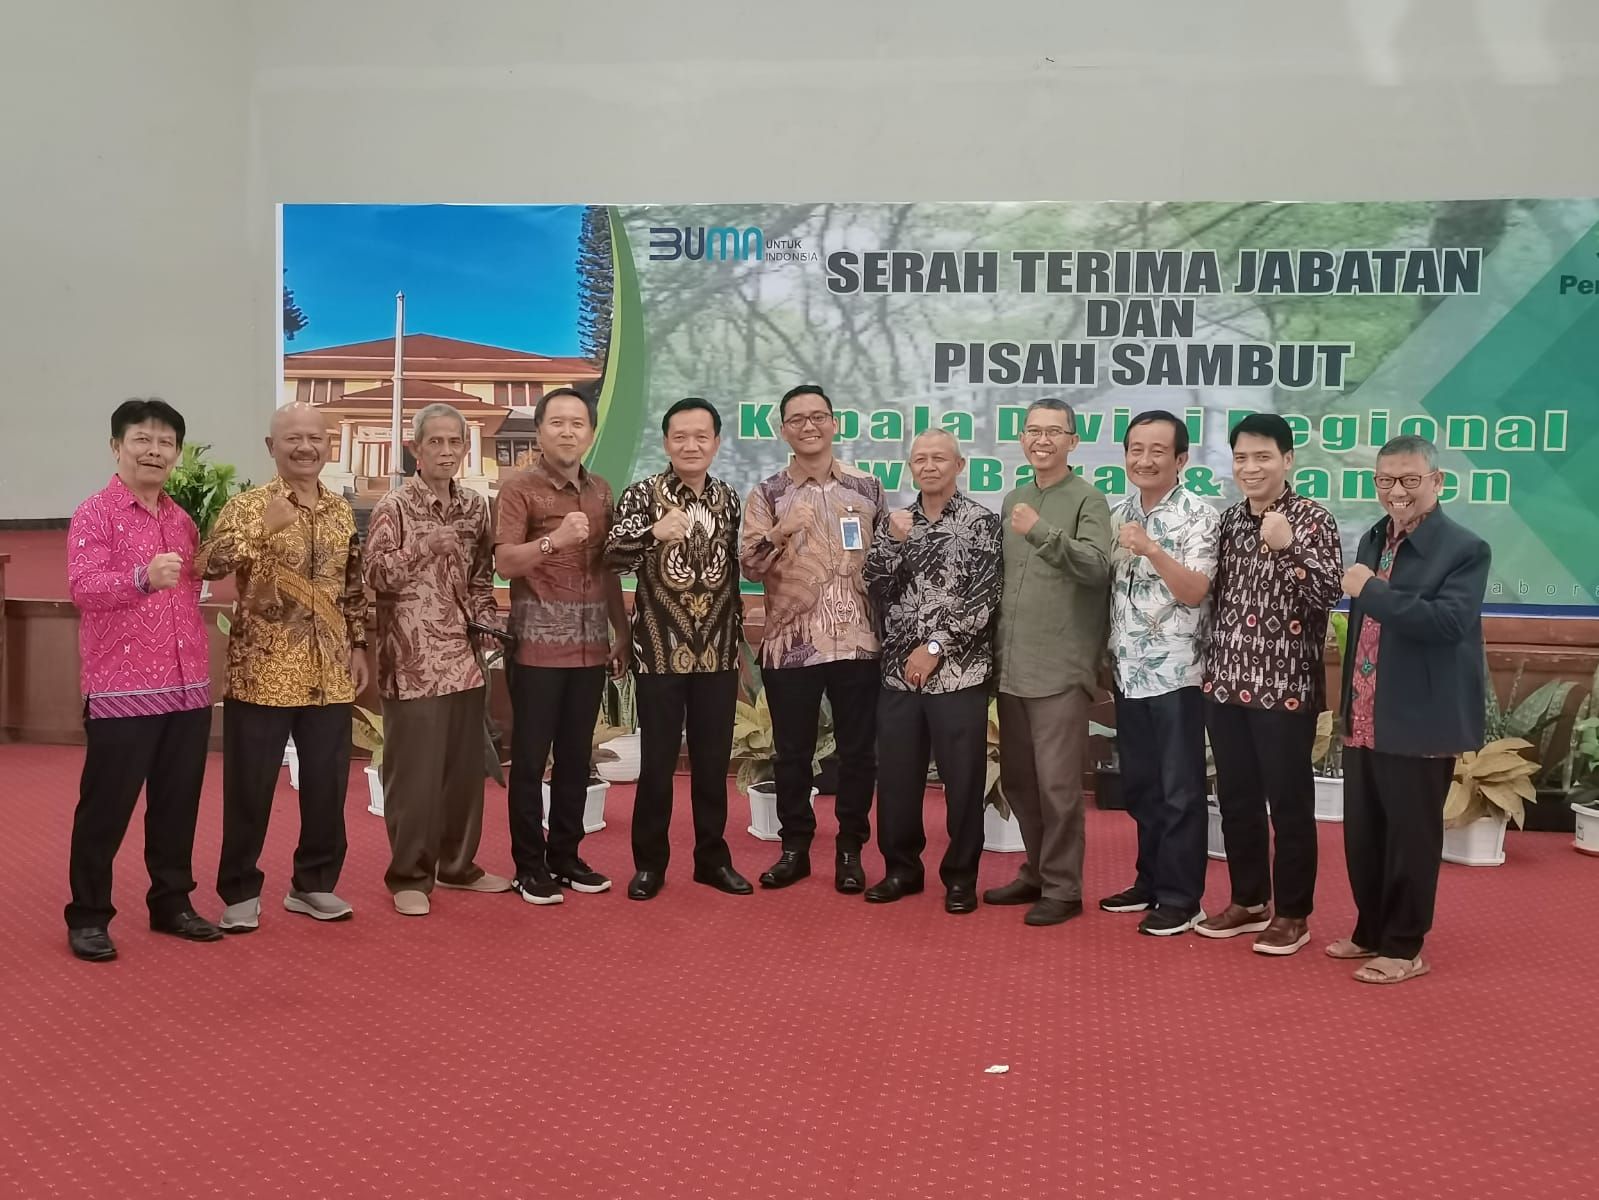  Tedy Sumarto dan Asep Dedi Mulyadi berphoto bersama Para Senior Rimbawan Perhutani Jabar-Banten di acara sertijab dan pisah sambut Kadivreg Perhutani Jabar-Banten